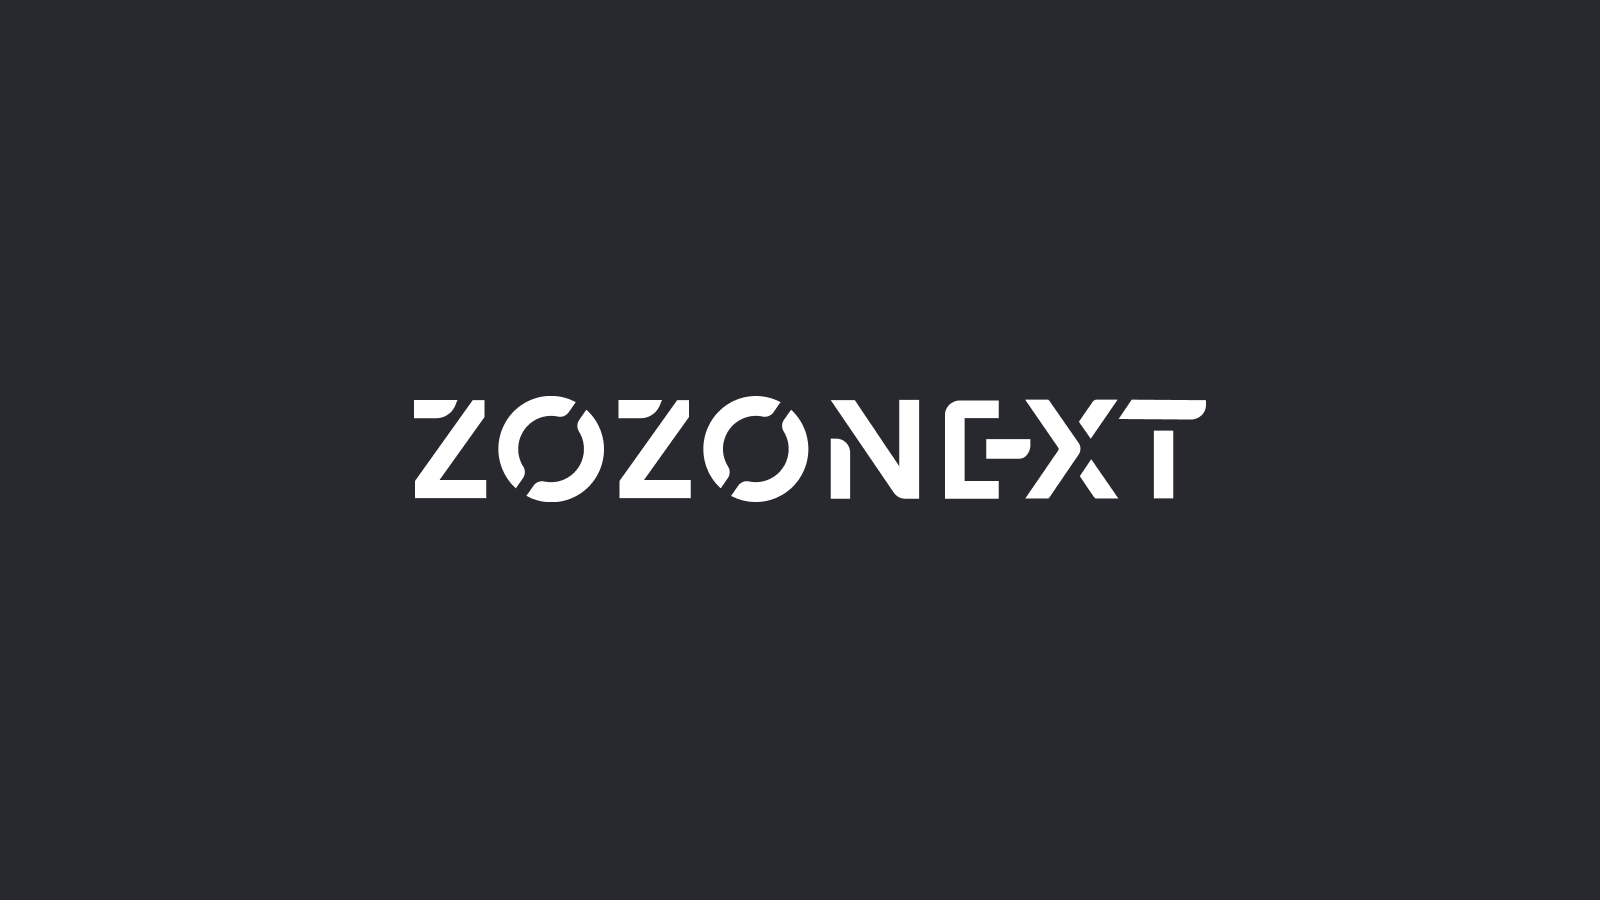 ZOZO NEXT, Inc. Announces New Representative Director, CEO